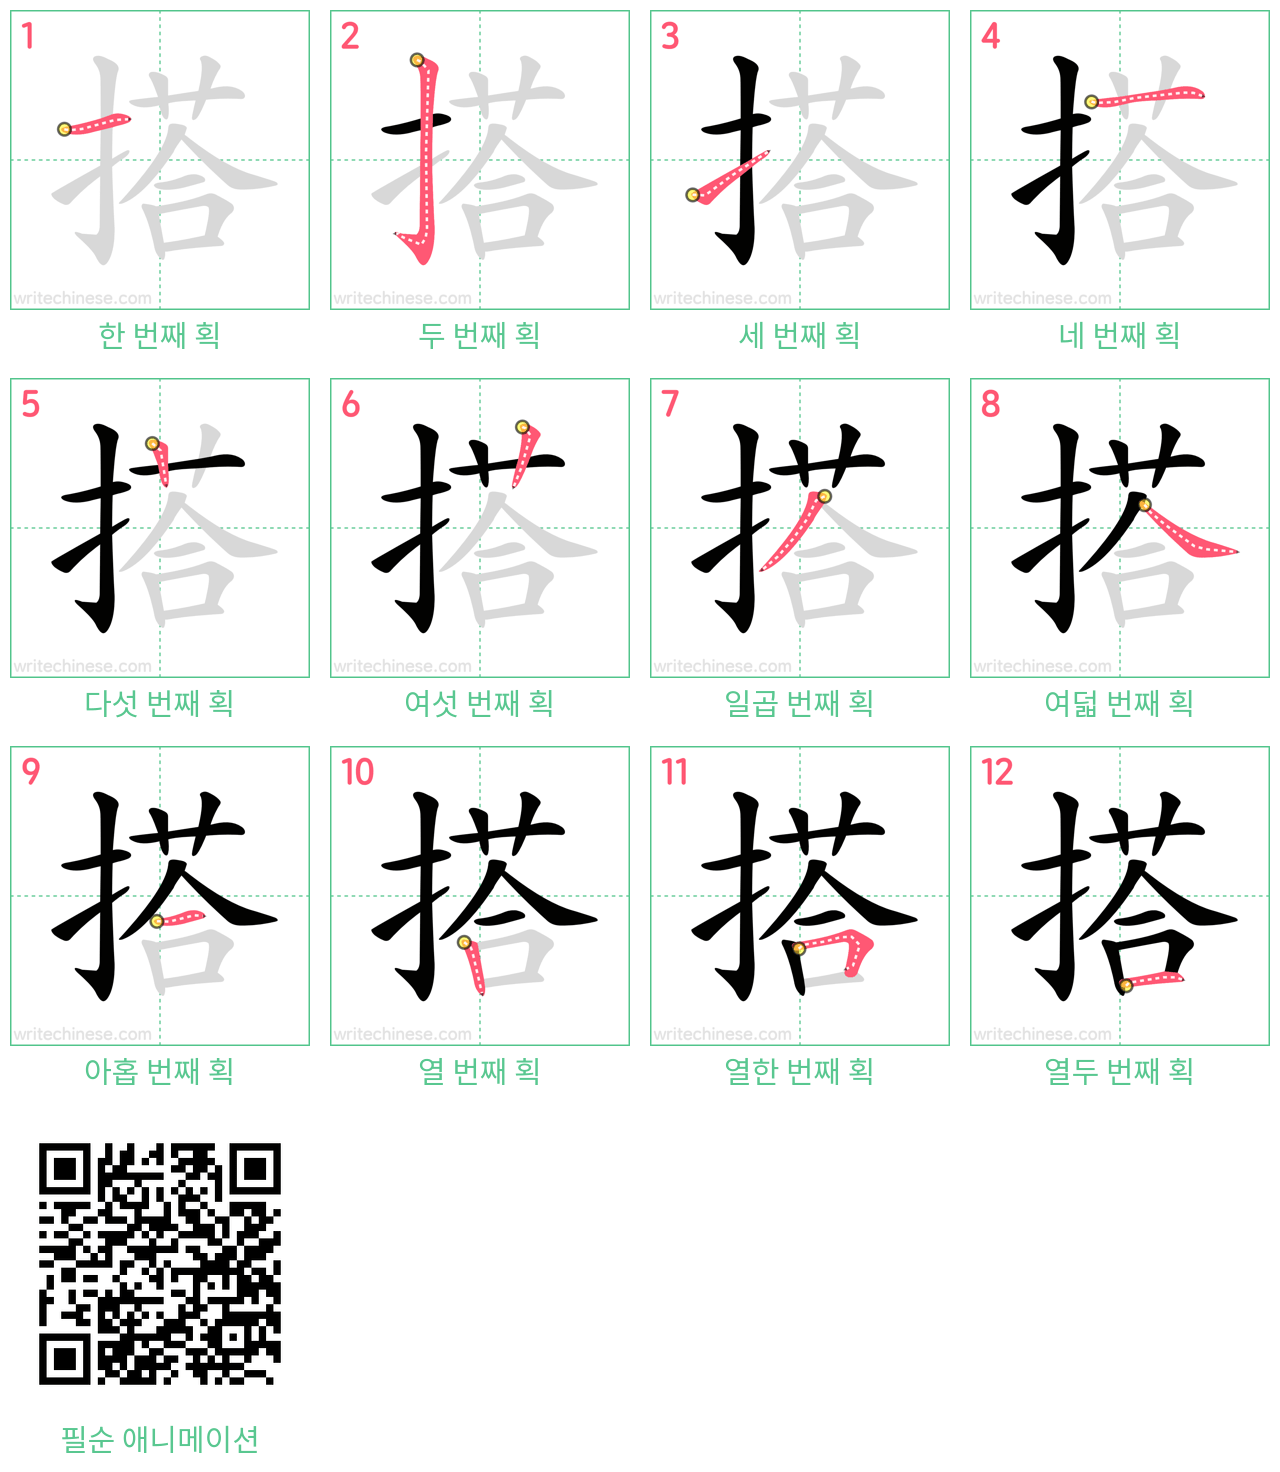 搭 step-by-step stroke order diagrams